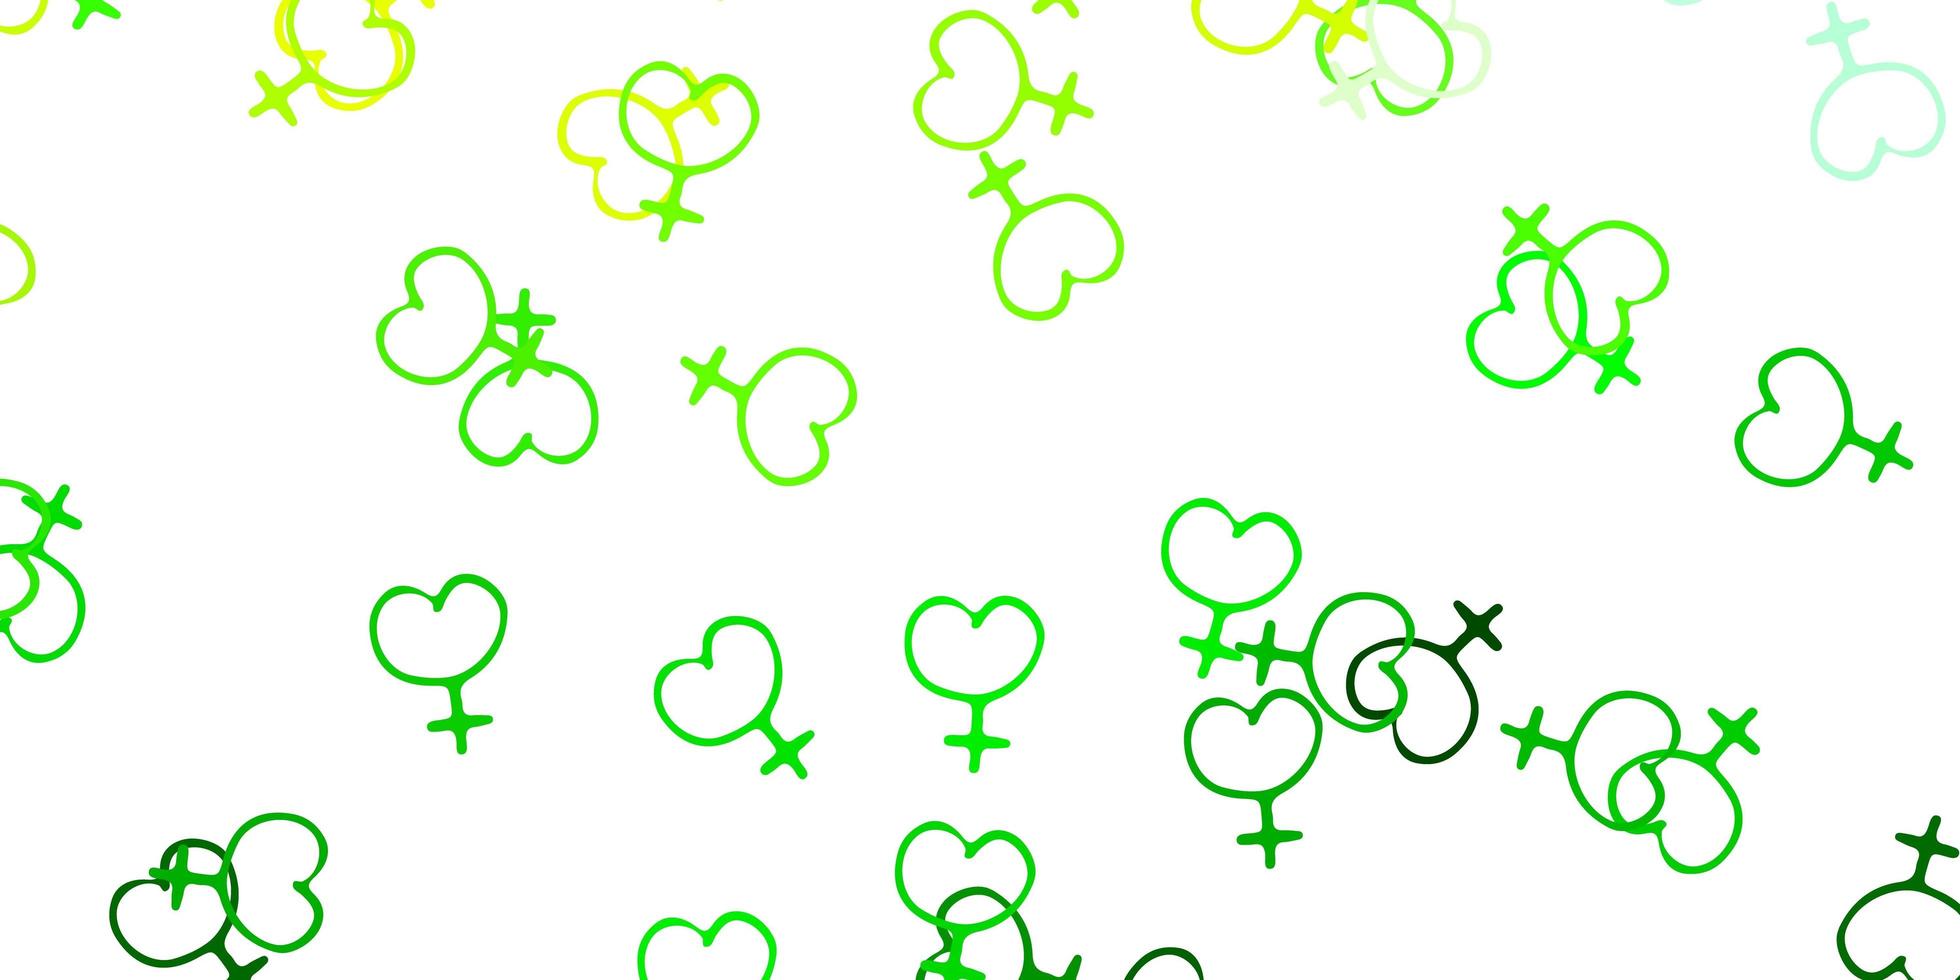 Fondo de vector verde claro, amarillo con símbolos de mujer.